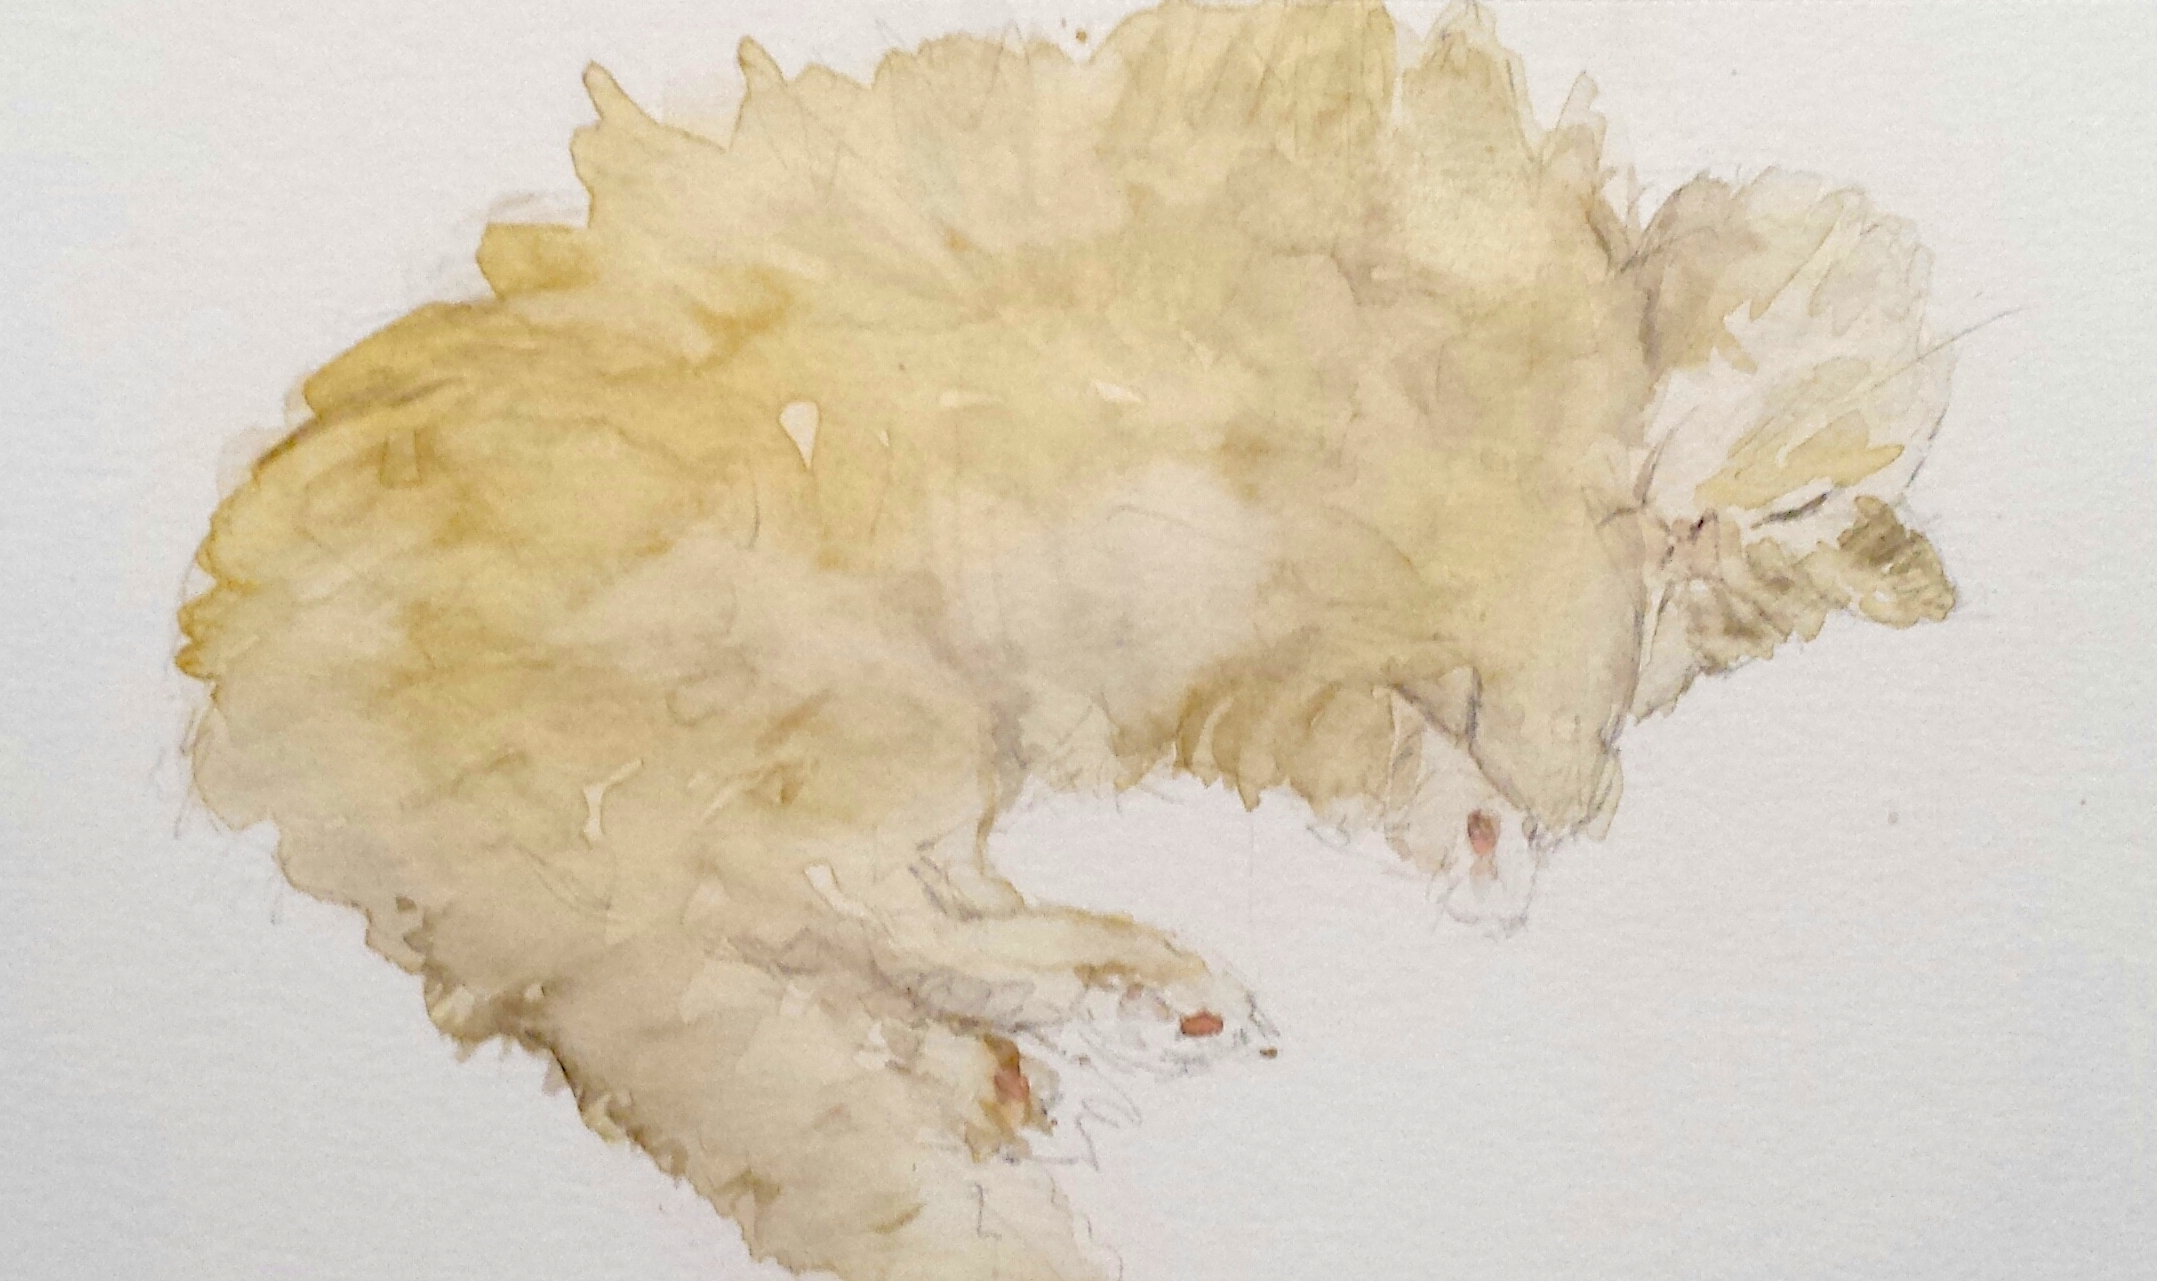 Sleeping cat, watercolor, 2016; SOLD